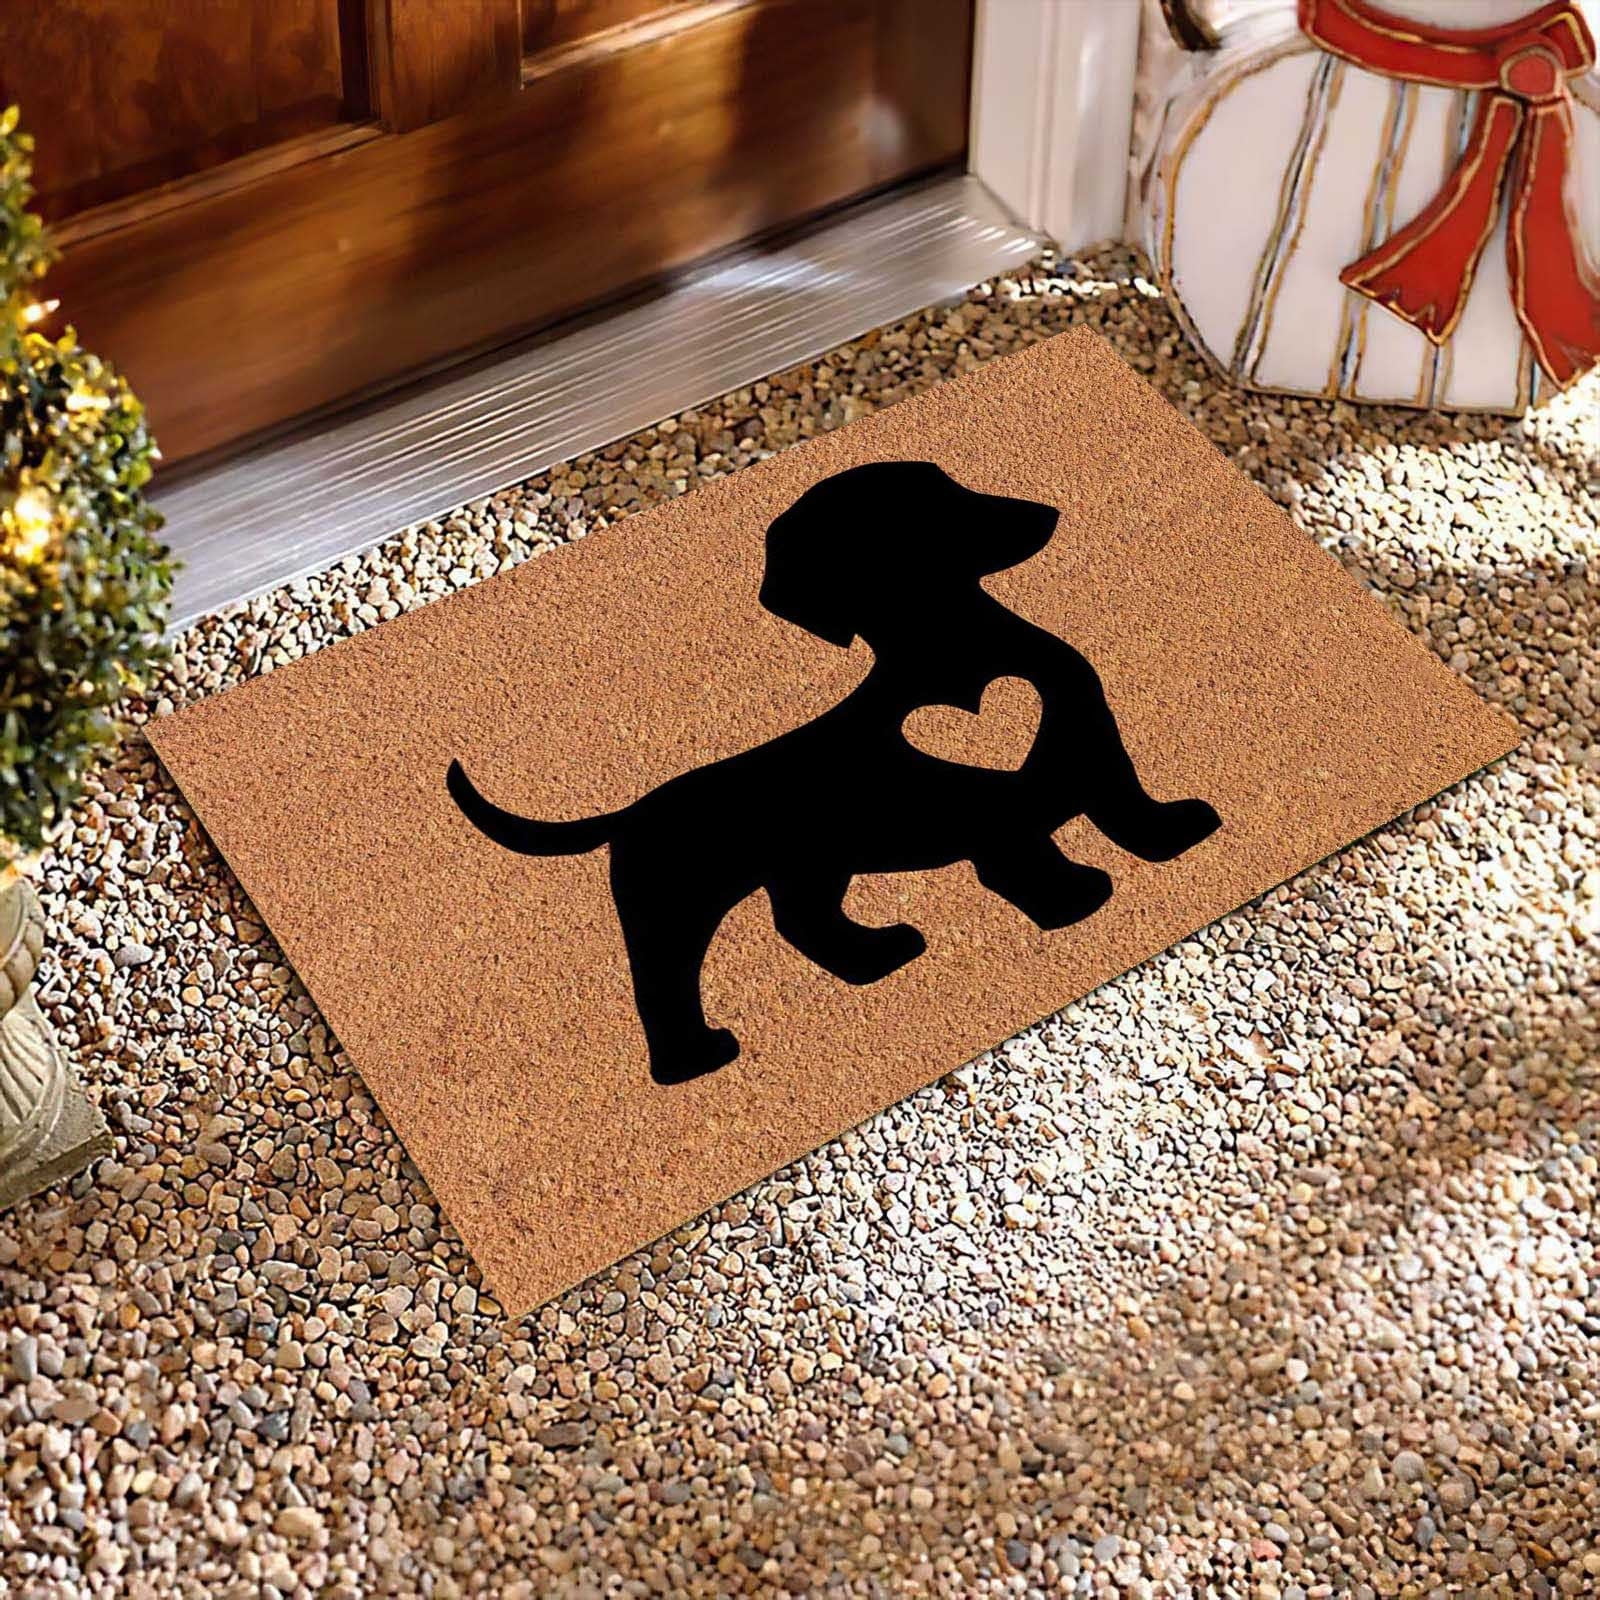 KIHOUT Deals Cute Pet Dog Themed Carpet,Welcome Floor Doormat 23.62 X  15.74in Non Slip Floor Mat Summer Holiday Funny Novelty Door Mats Indoor  Outdoor Decor 